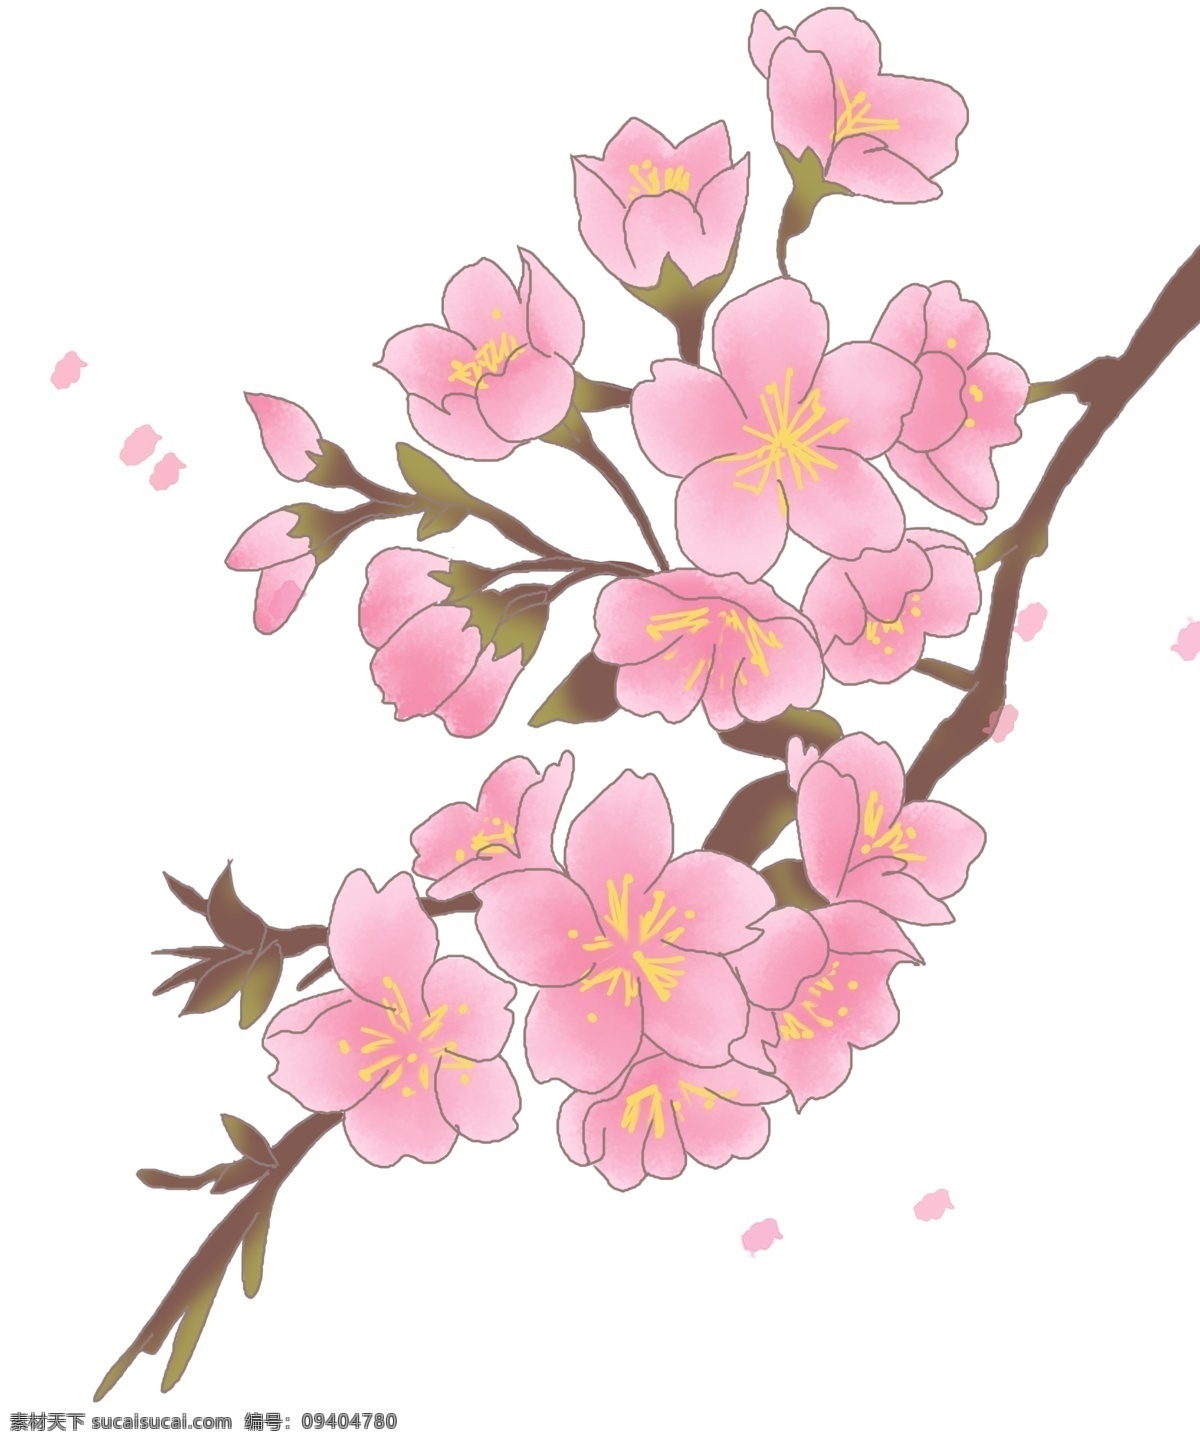 春季 飘荡 樱花 插画 飘荡的樱花 漂亮的樱花 卡通插画 手绘樱花插画 春季樱花插画 美丽的樱花